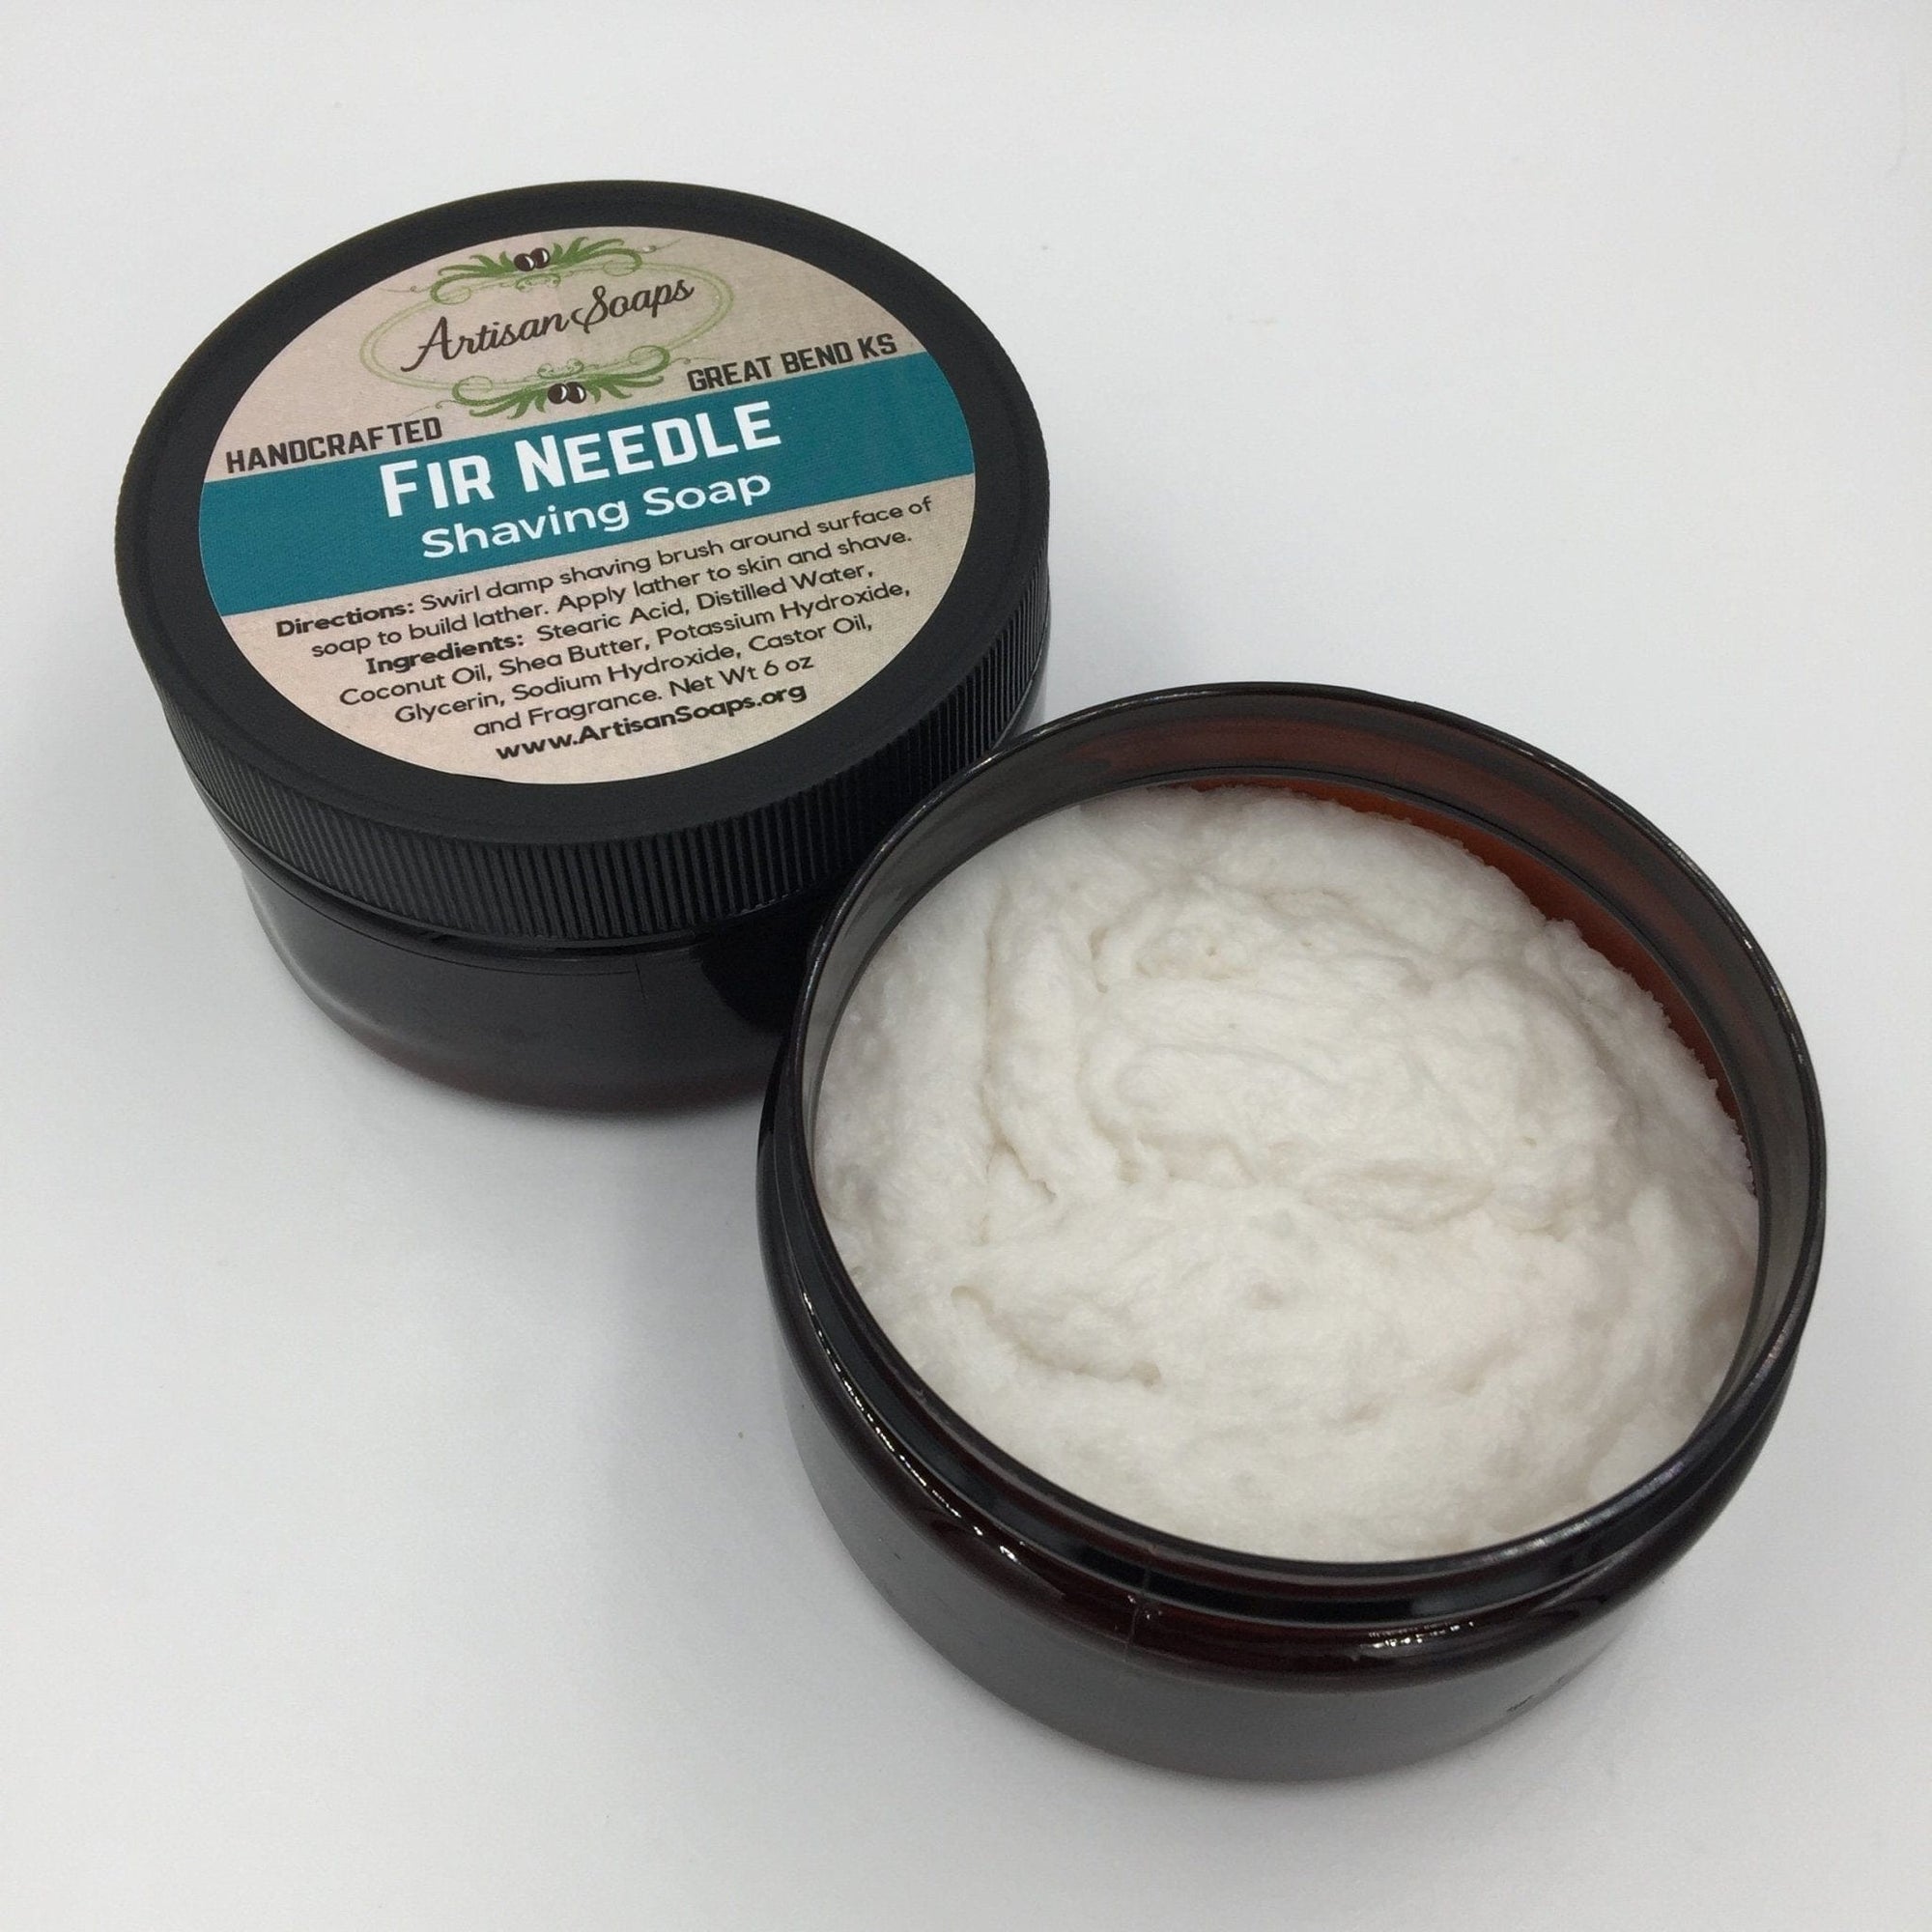 Fir Needle Shaving Soap - Artisan Soaps